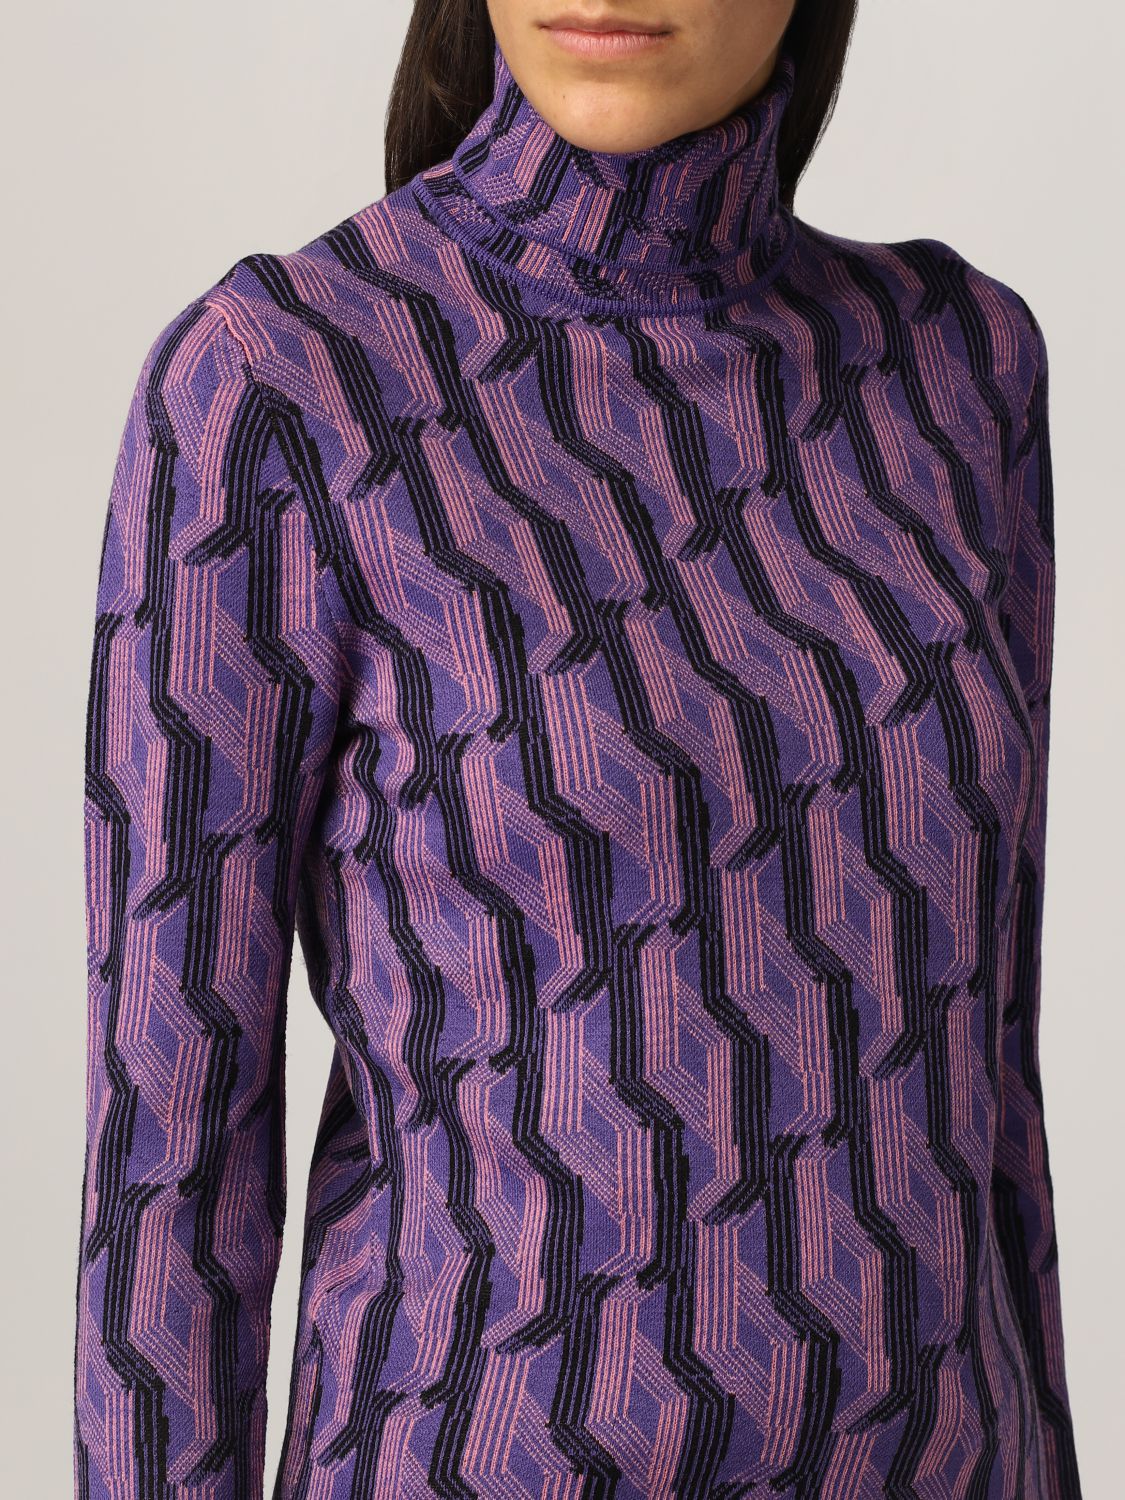 Jersey Prada: Jersey de cuello alto de Prada en lana virgen estampada violeta 5